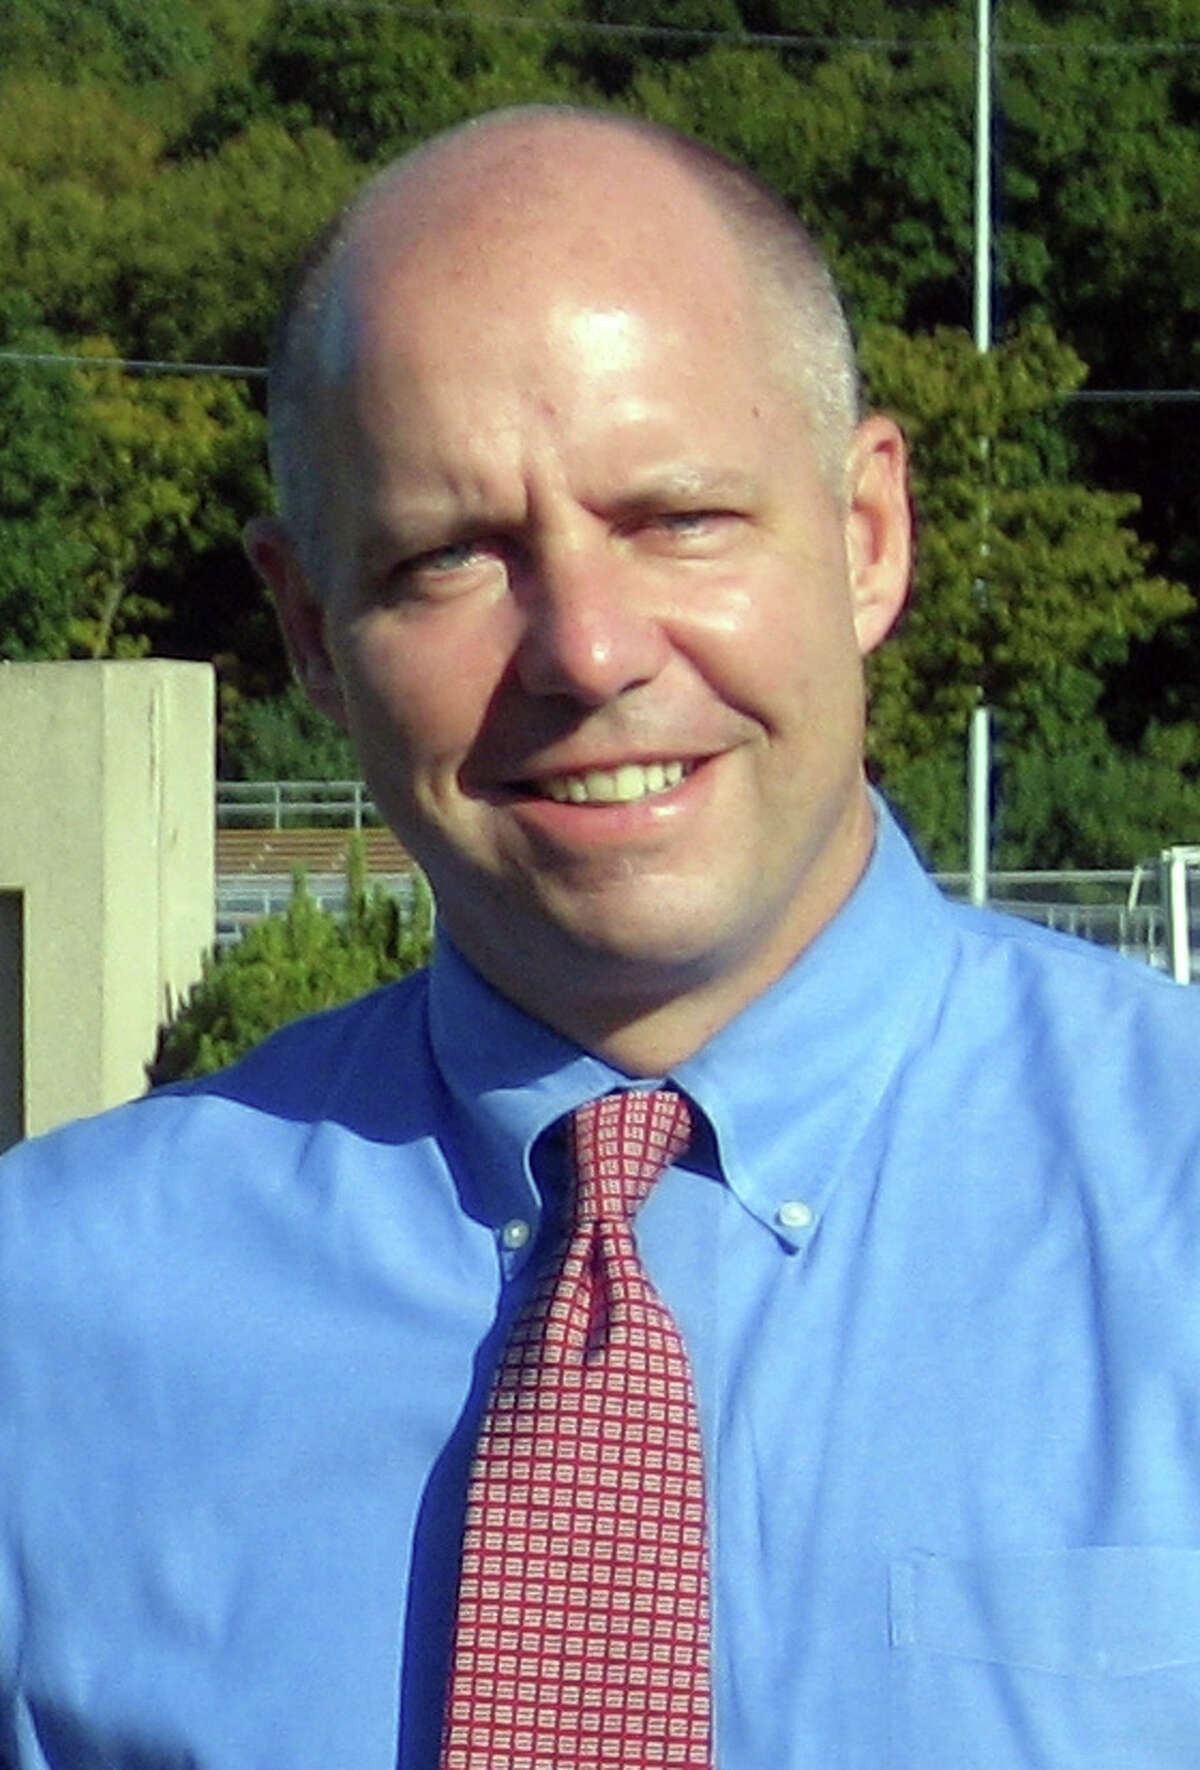 State Rep. Michael Lawlor